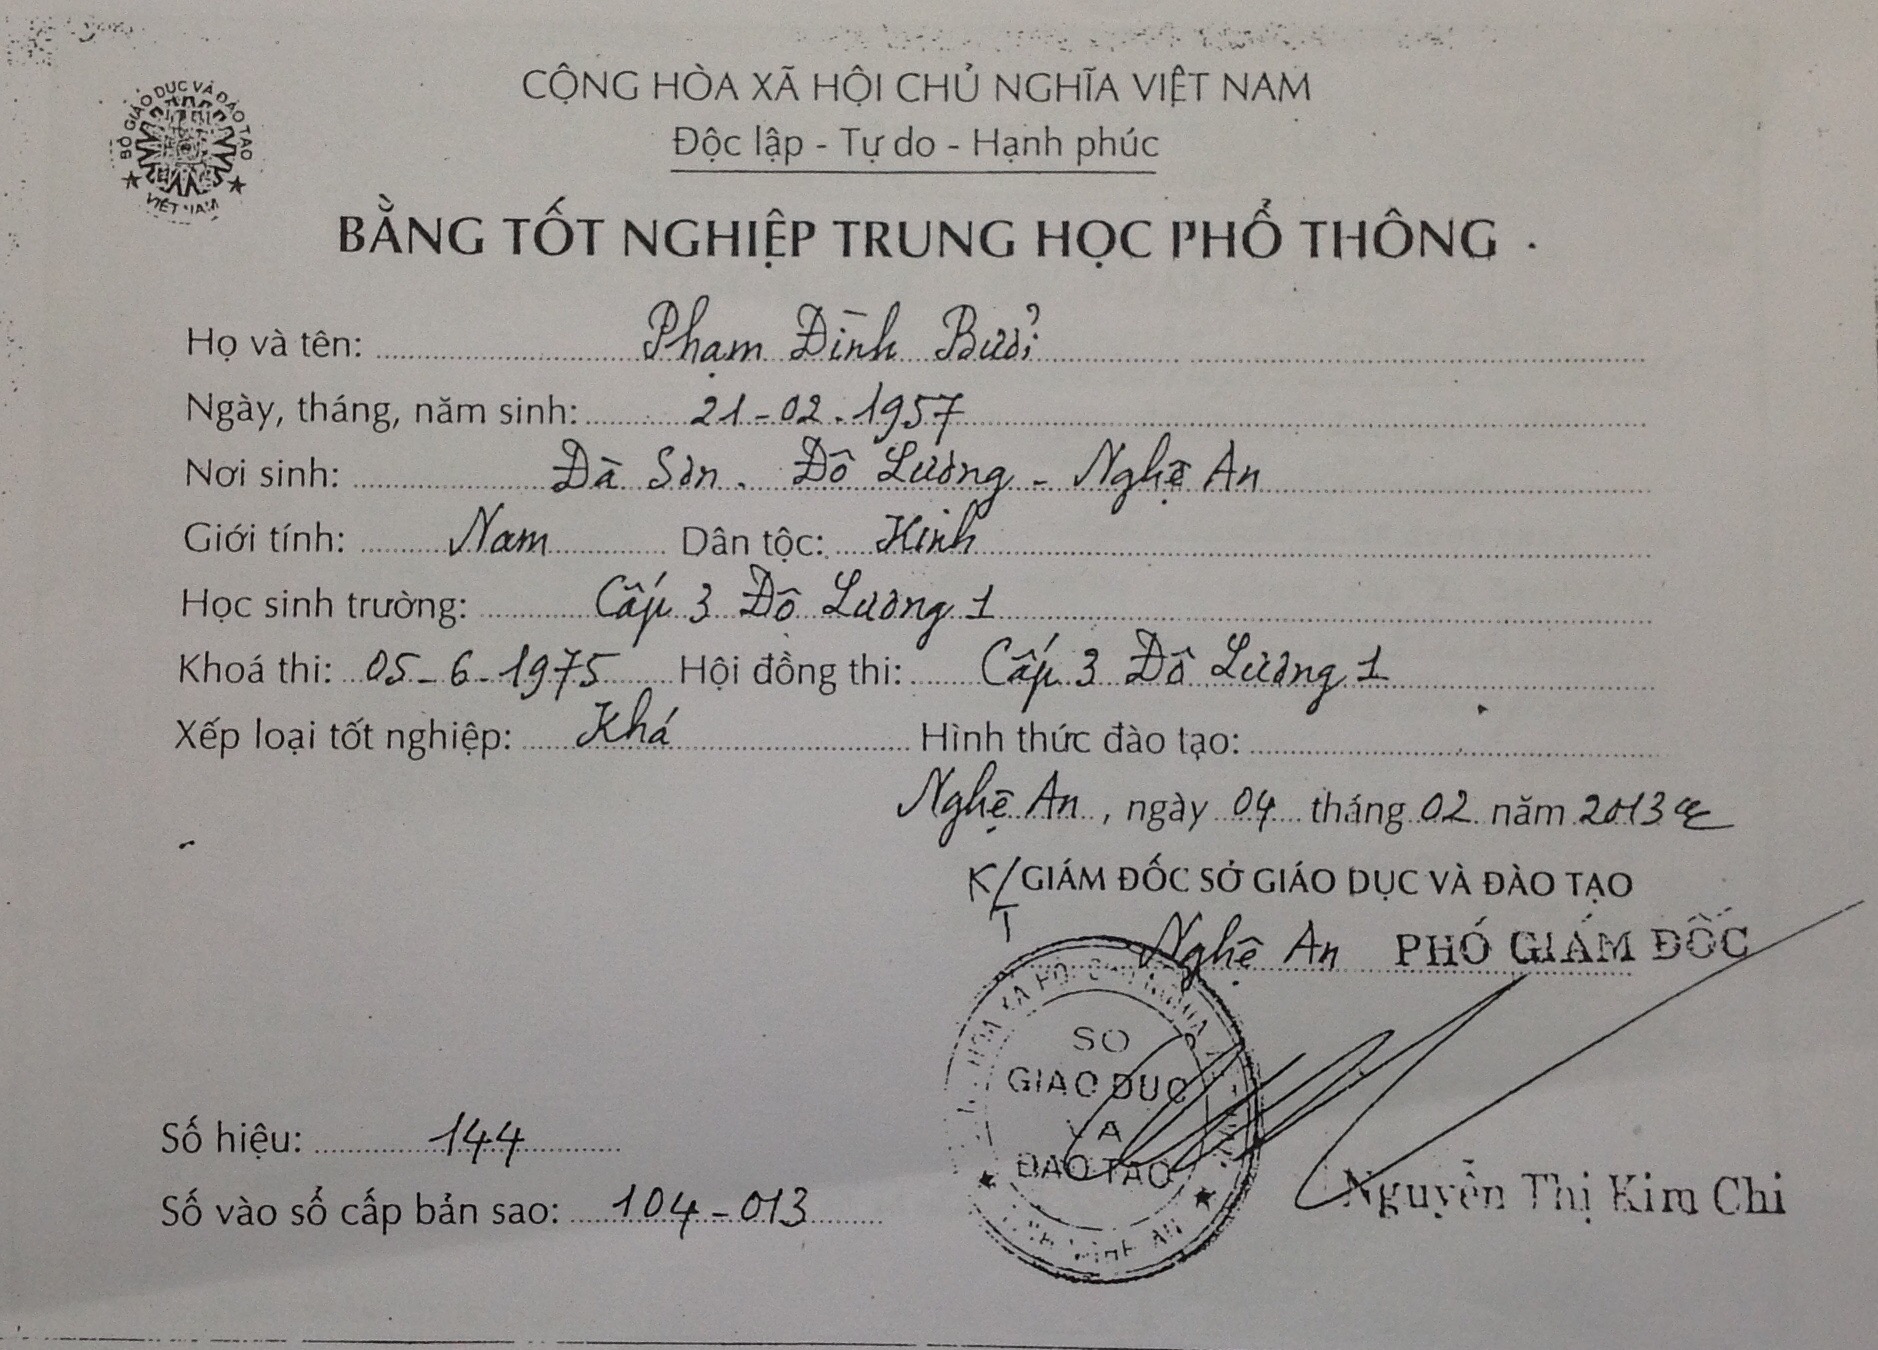 Bằng tốt nghiệp THPT của ông Phạm Đình Bưởi ghi năm tốt nghiệp là 1975, ngày, tháng, năm sinh là 21/2/1957.